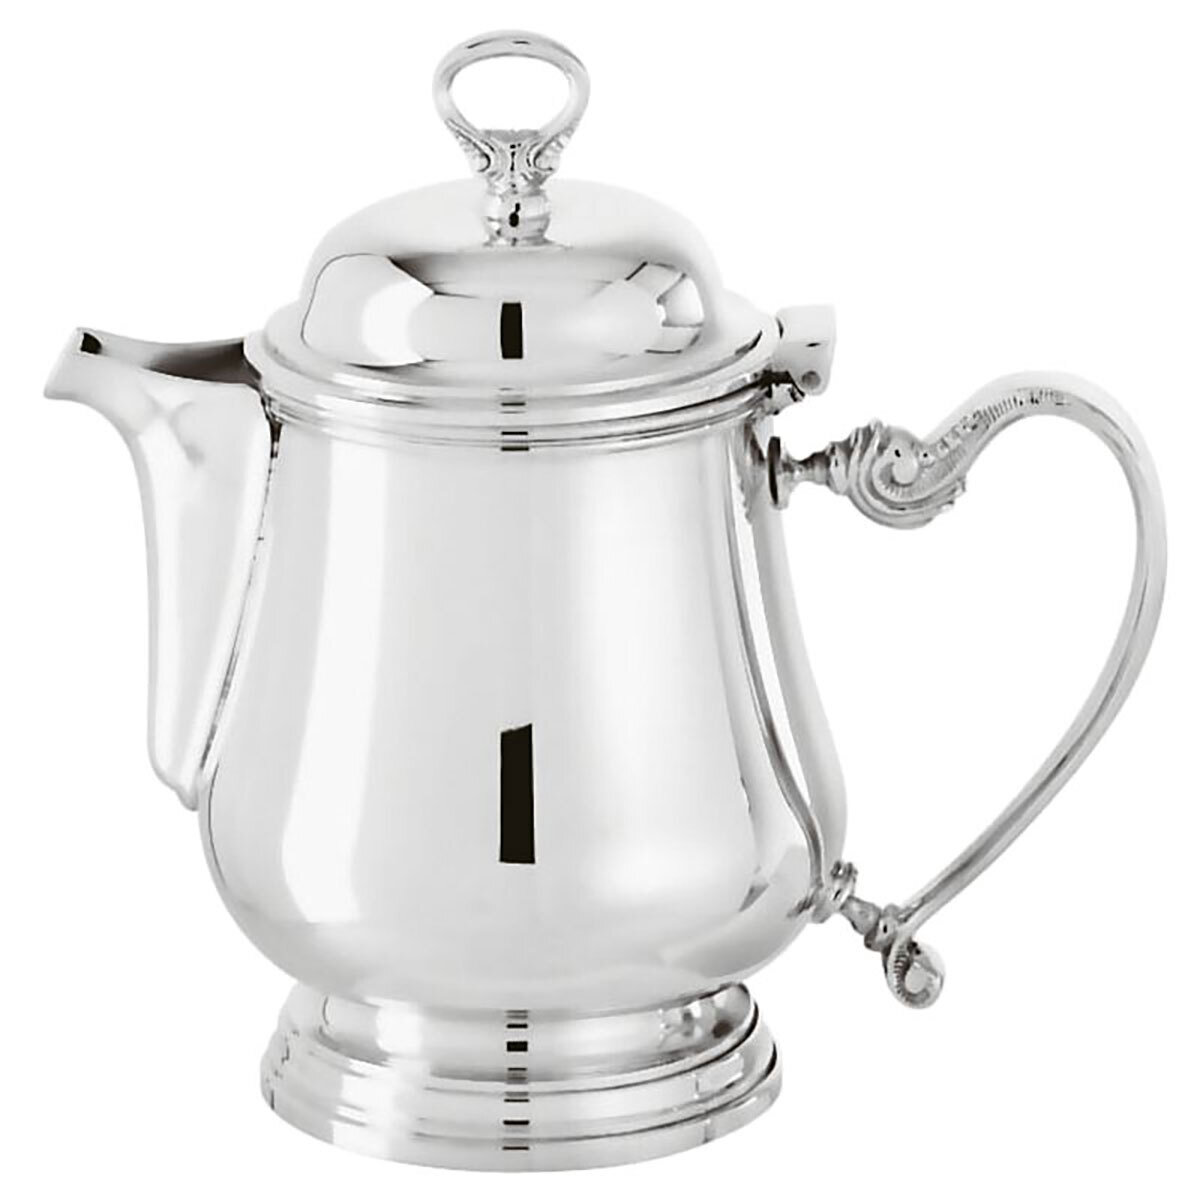 Sambonet Contour Tea Pot 53008L06